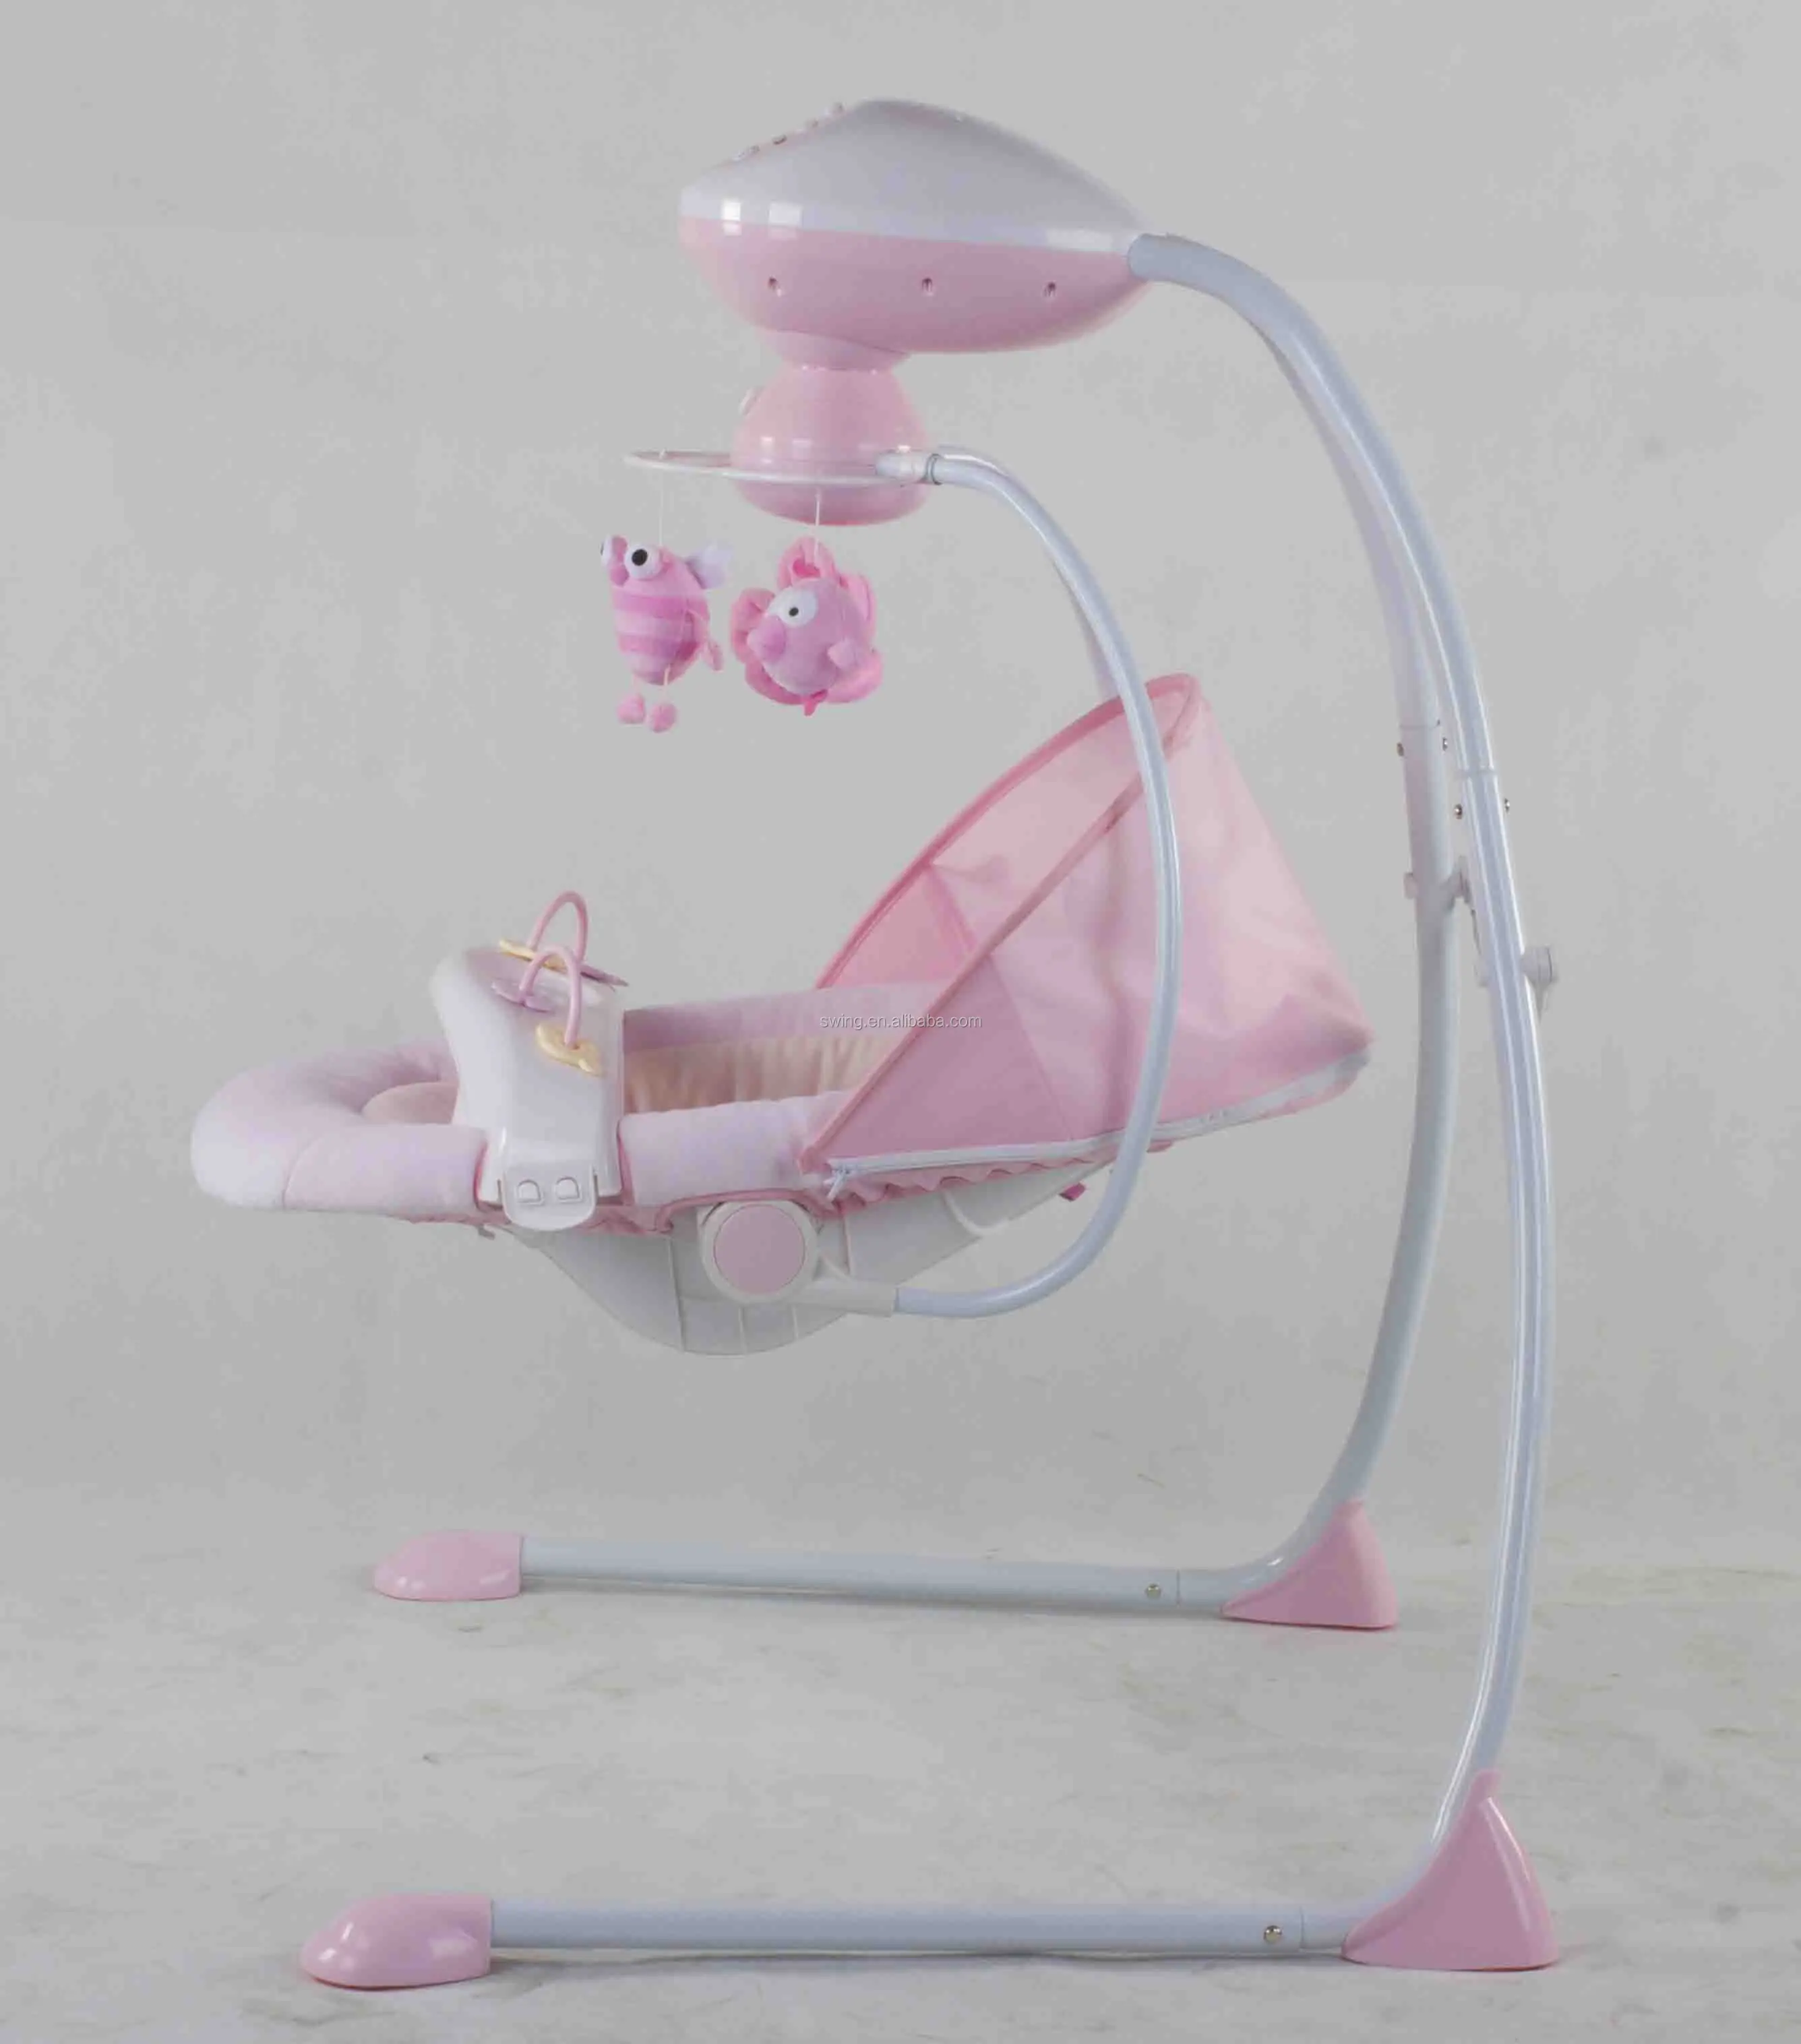 ハンギングベビースイング 電動人形スイング ベビー電動クレードルスイング Buy ブランコ式のベビーチェアをぶら下げ スイングの電気人形 赤ちゃん電動ゆりかごブランコ Product On Alibaba Com